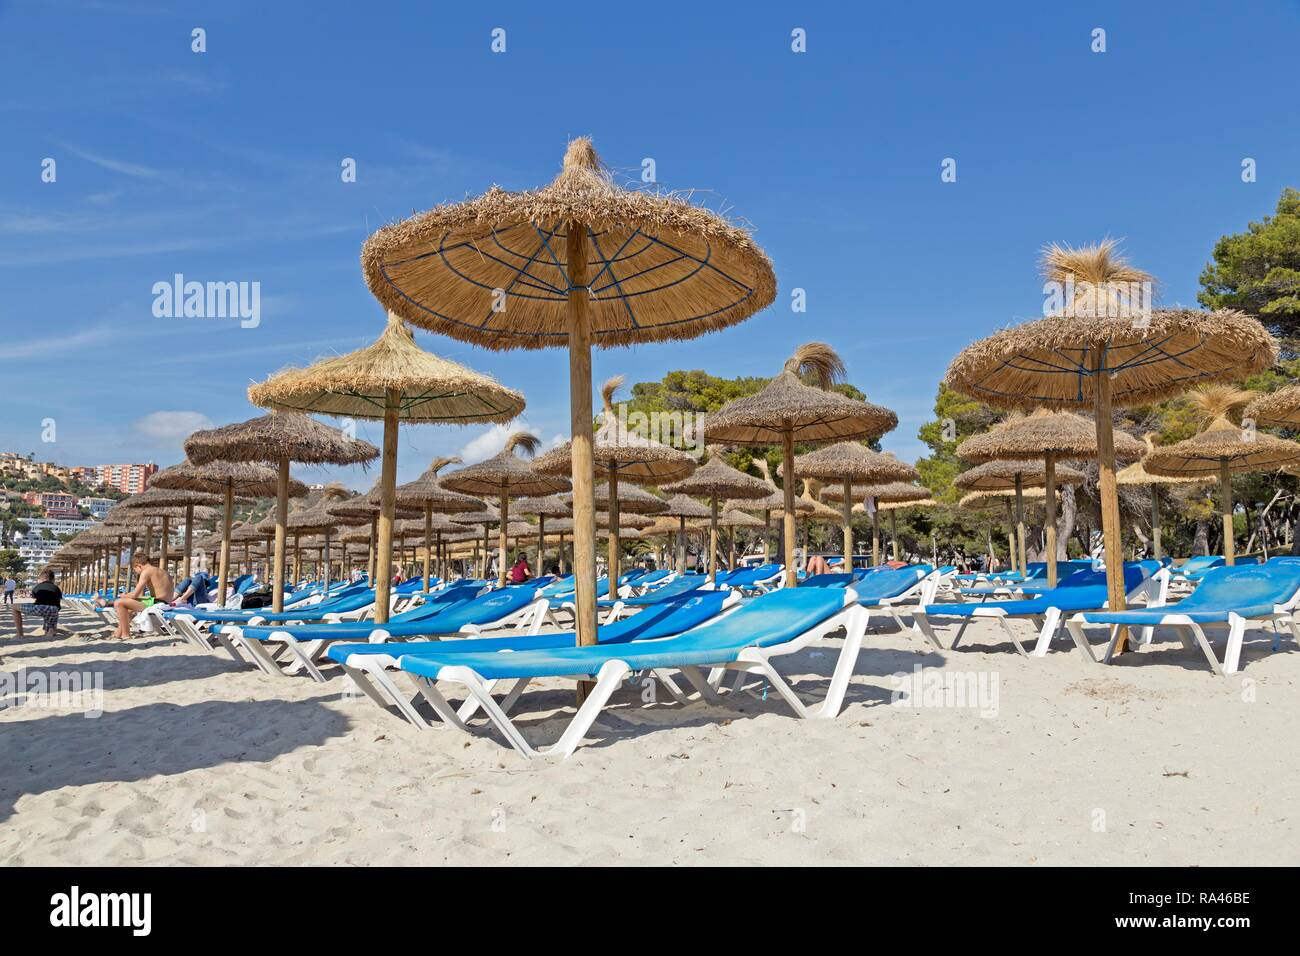 Playa con tumbonas y sombrillas, Santa Ponca, Mallorca, España Foto de stock